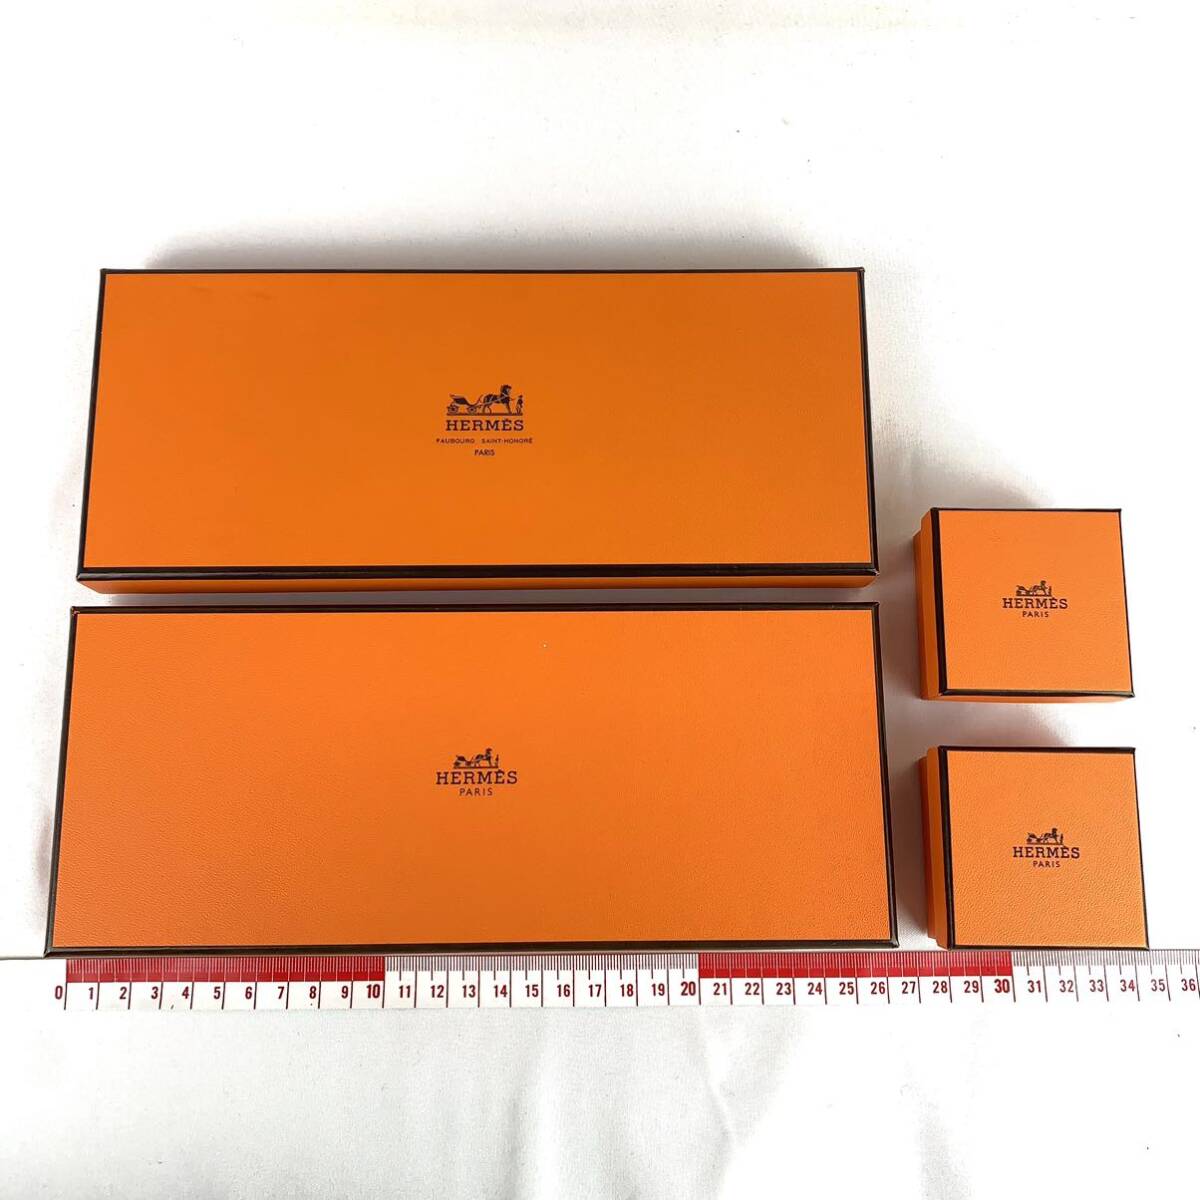 HERMES エルメス 空箱 24個 まとめ 空き箱 BOX オレンジ ボックス 小物 保存箱 保存 アクセサリー用 の画像2